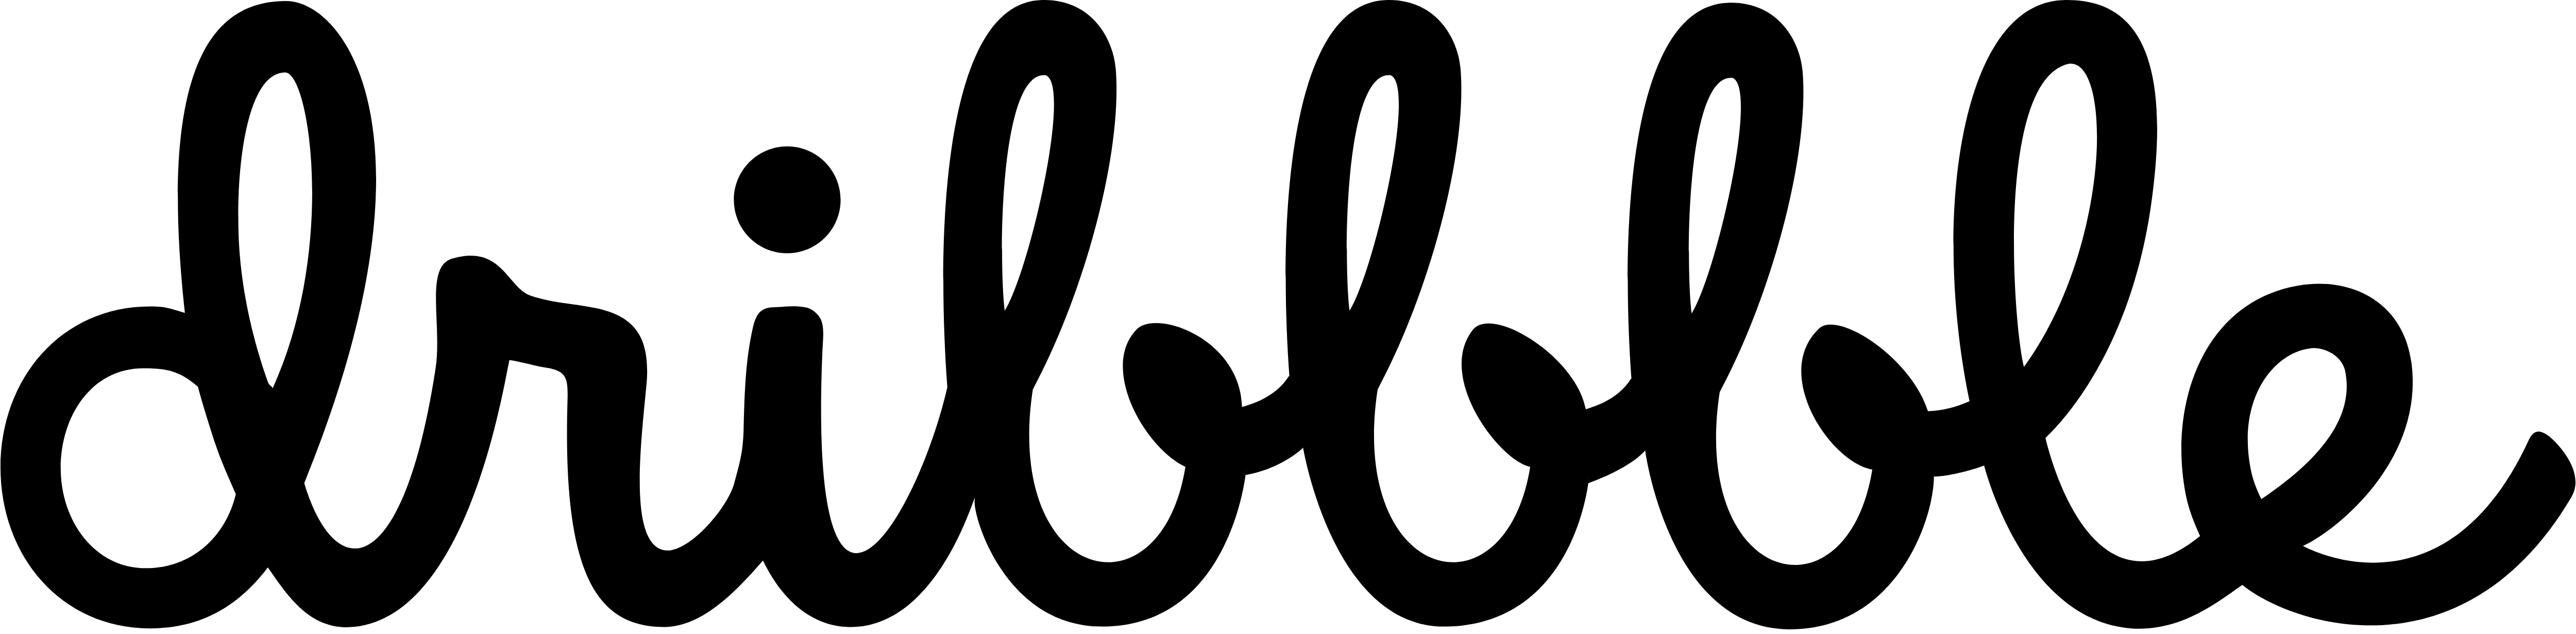 Dribbble Logo PNG - 179083